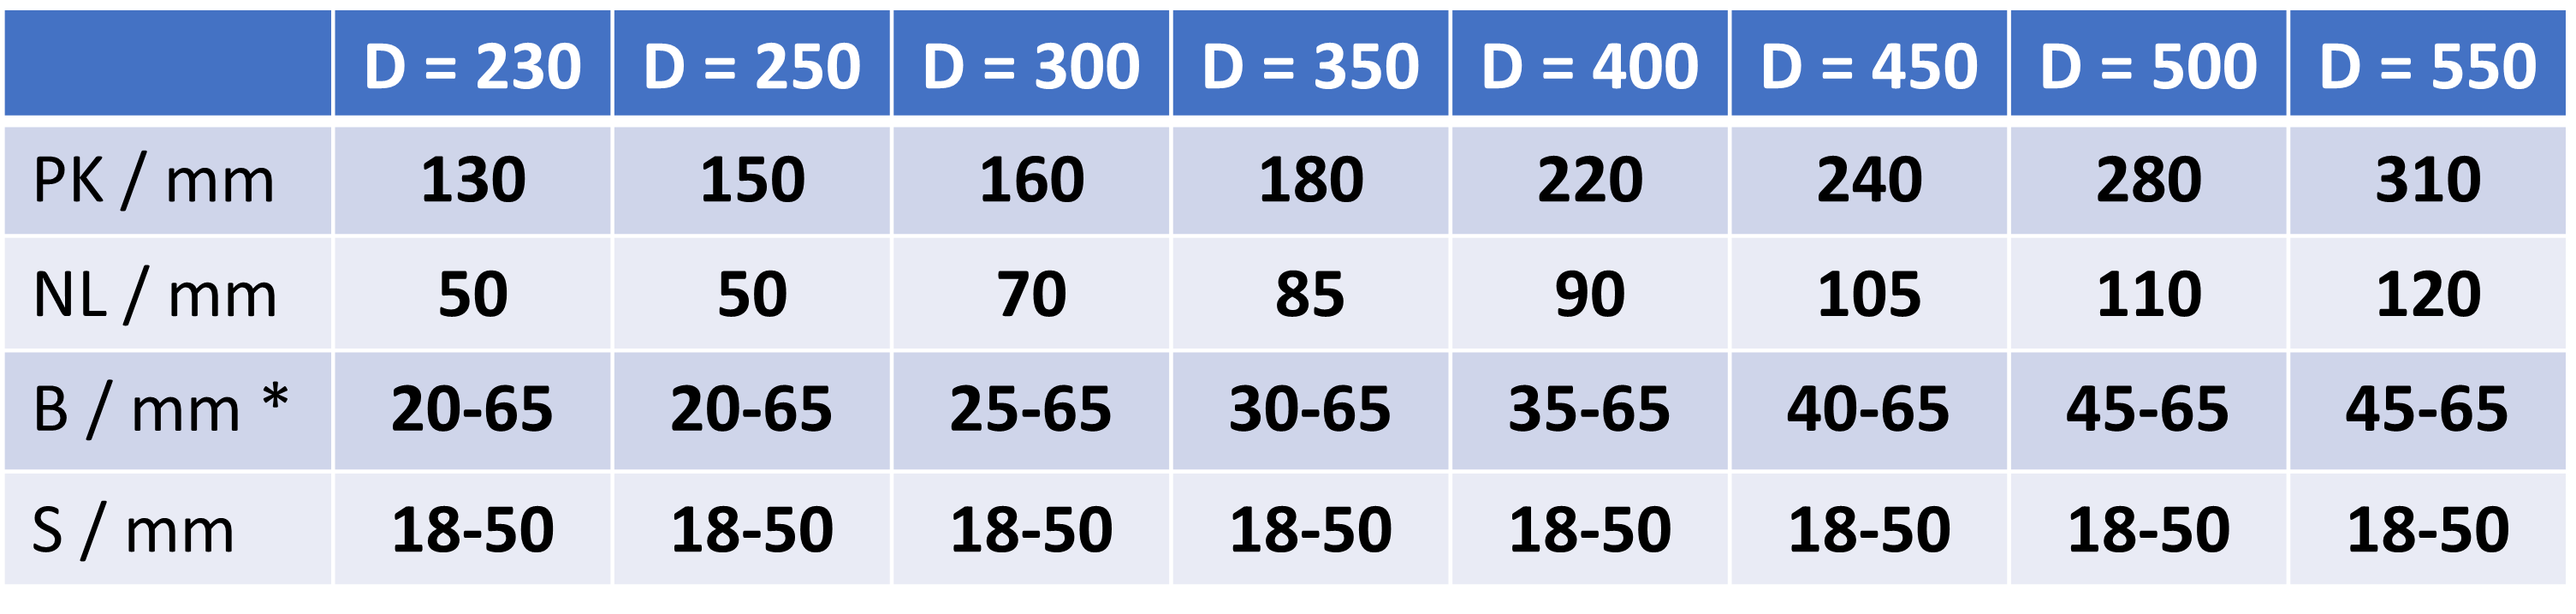 SB-XL Dimensionen Tabelle